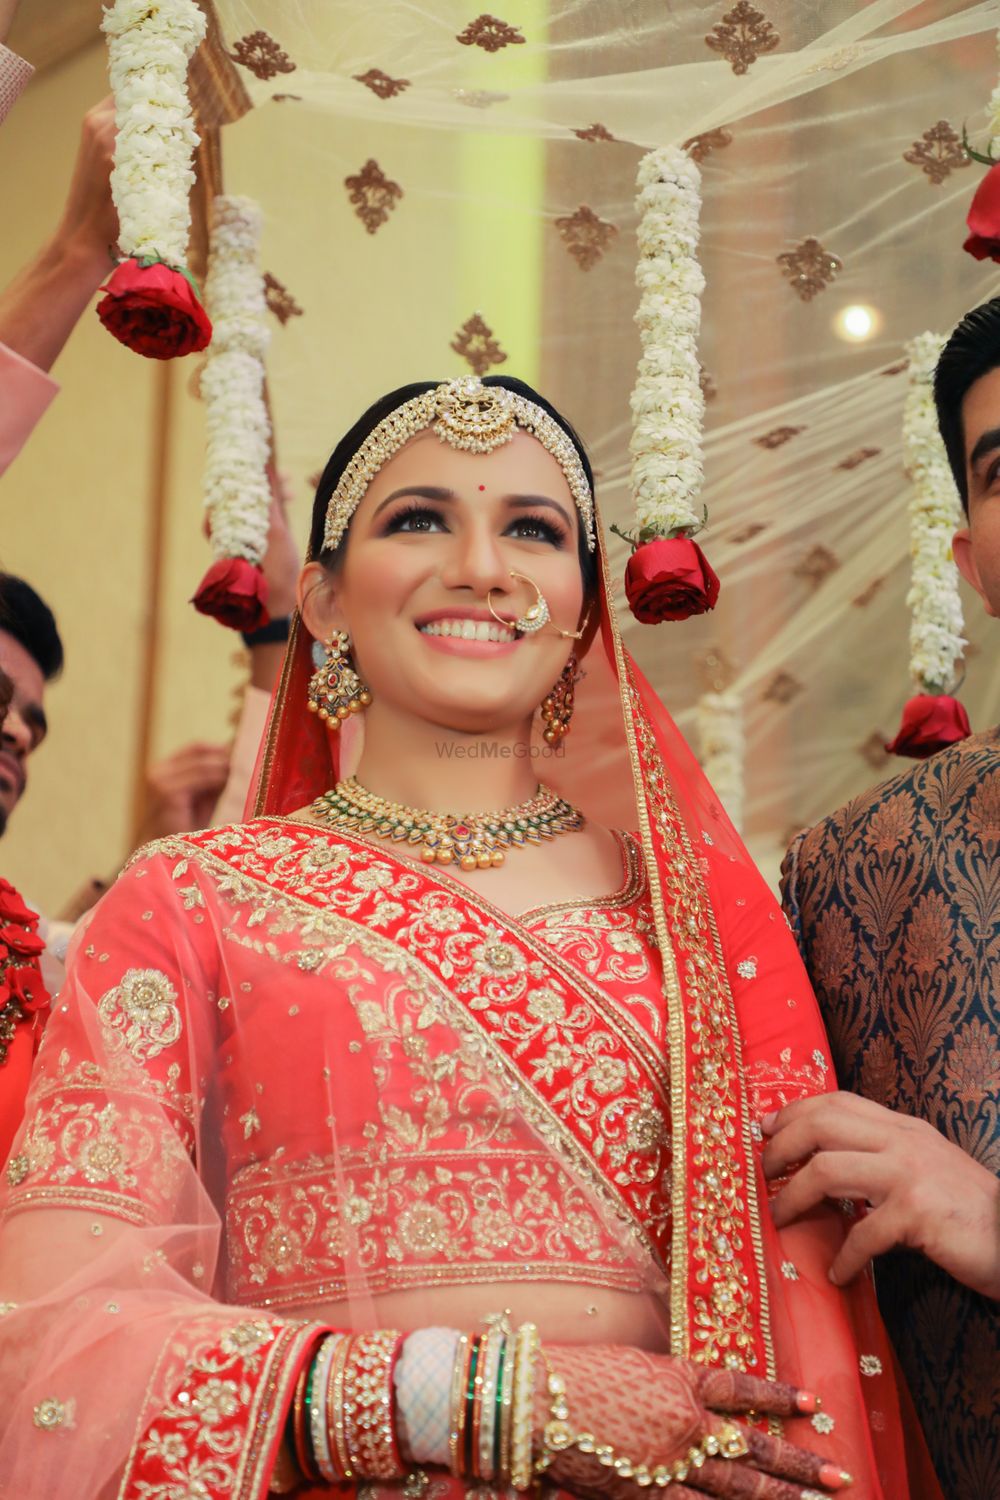 Photo From Riya & Aakash Wedding | The Club - By Wedding Storytellers